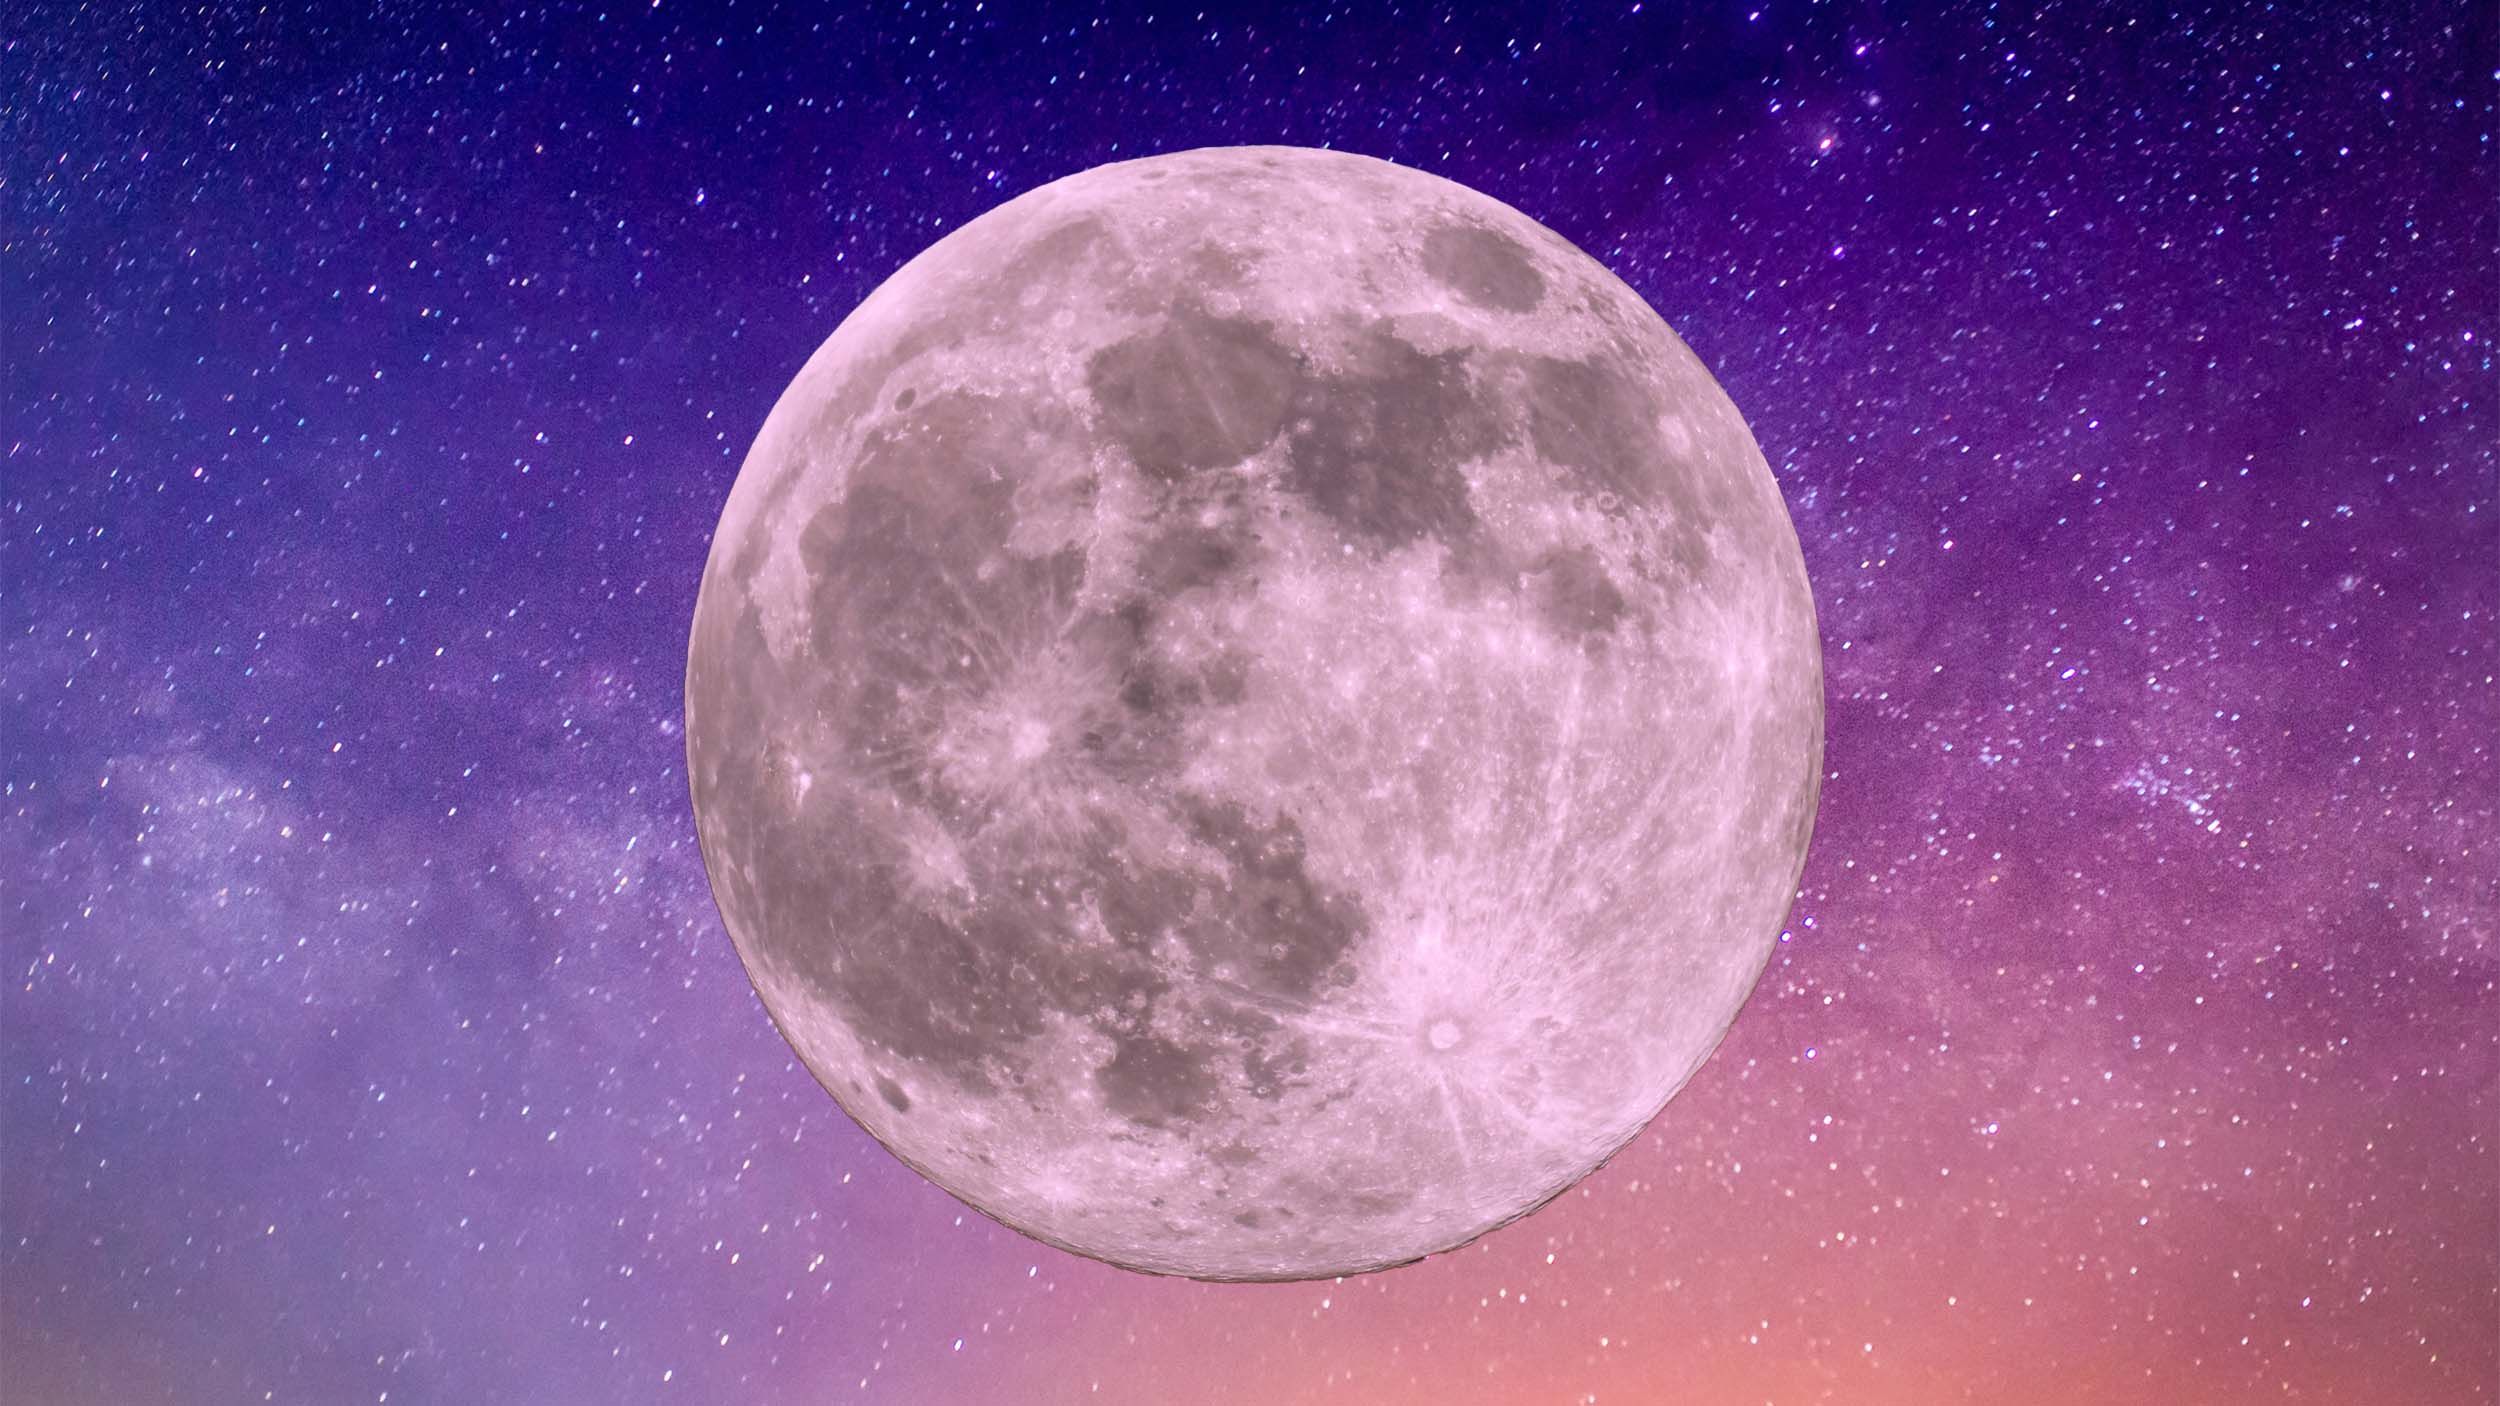 Đầy trăng Libra được xem là một trong những hiện tượng tự nhiên đẹp nhất của thiên nhiên. Hãy chiêm ngưỡng hình ảnh lung linh này để thấy rõ sự tinh tế và hài hoà của đêm trăng rực rỡ.